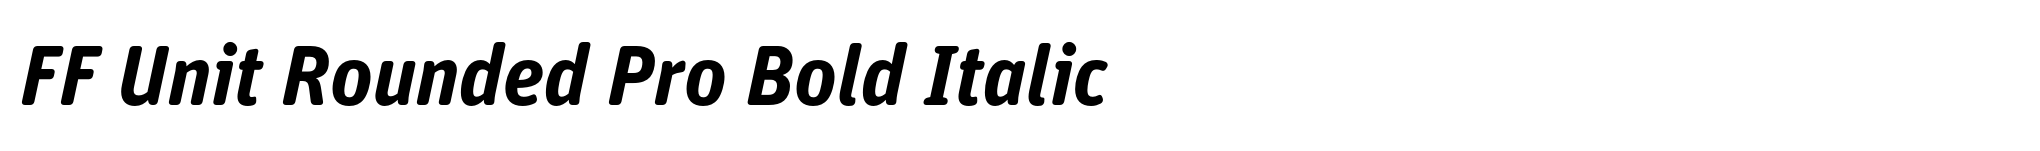 FF Unit Rounded Pro Bold Italic image